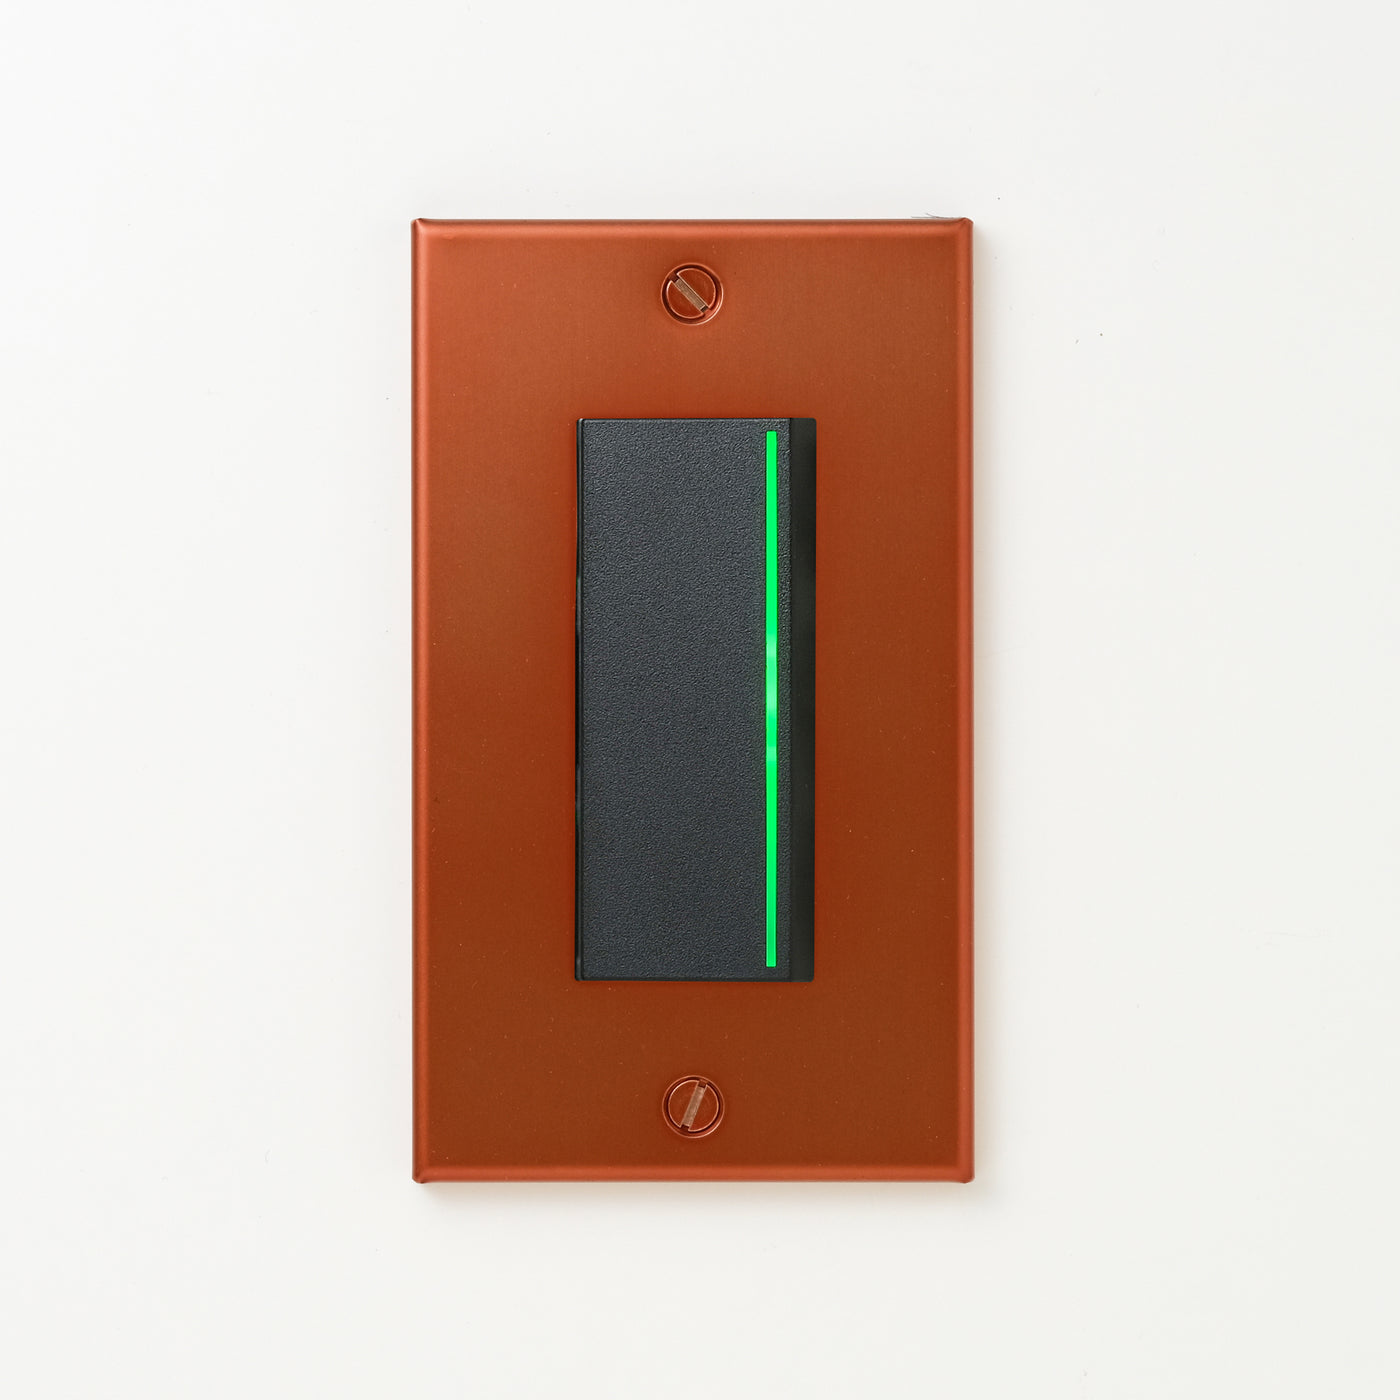 銅色（光沢） プレート <br>+ NK 片切、3路ガイドランプ（グリーン）付スイッチシングル  ブラック